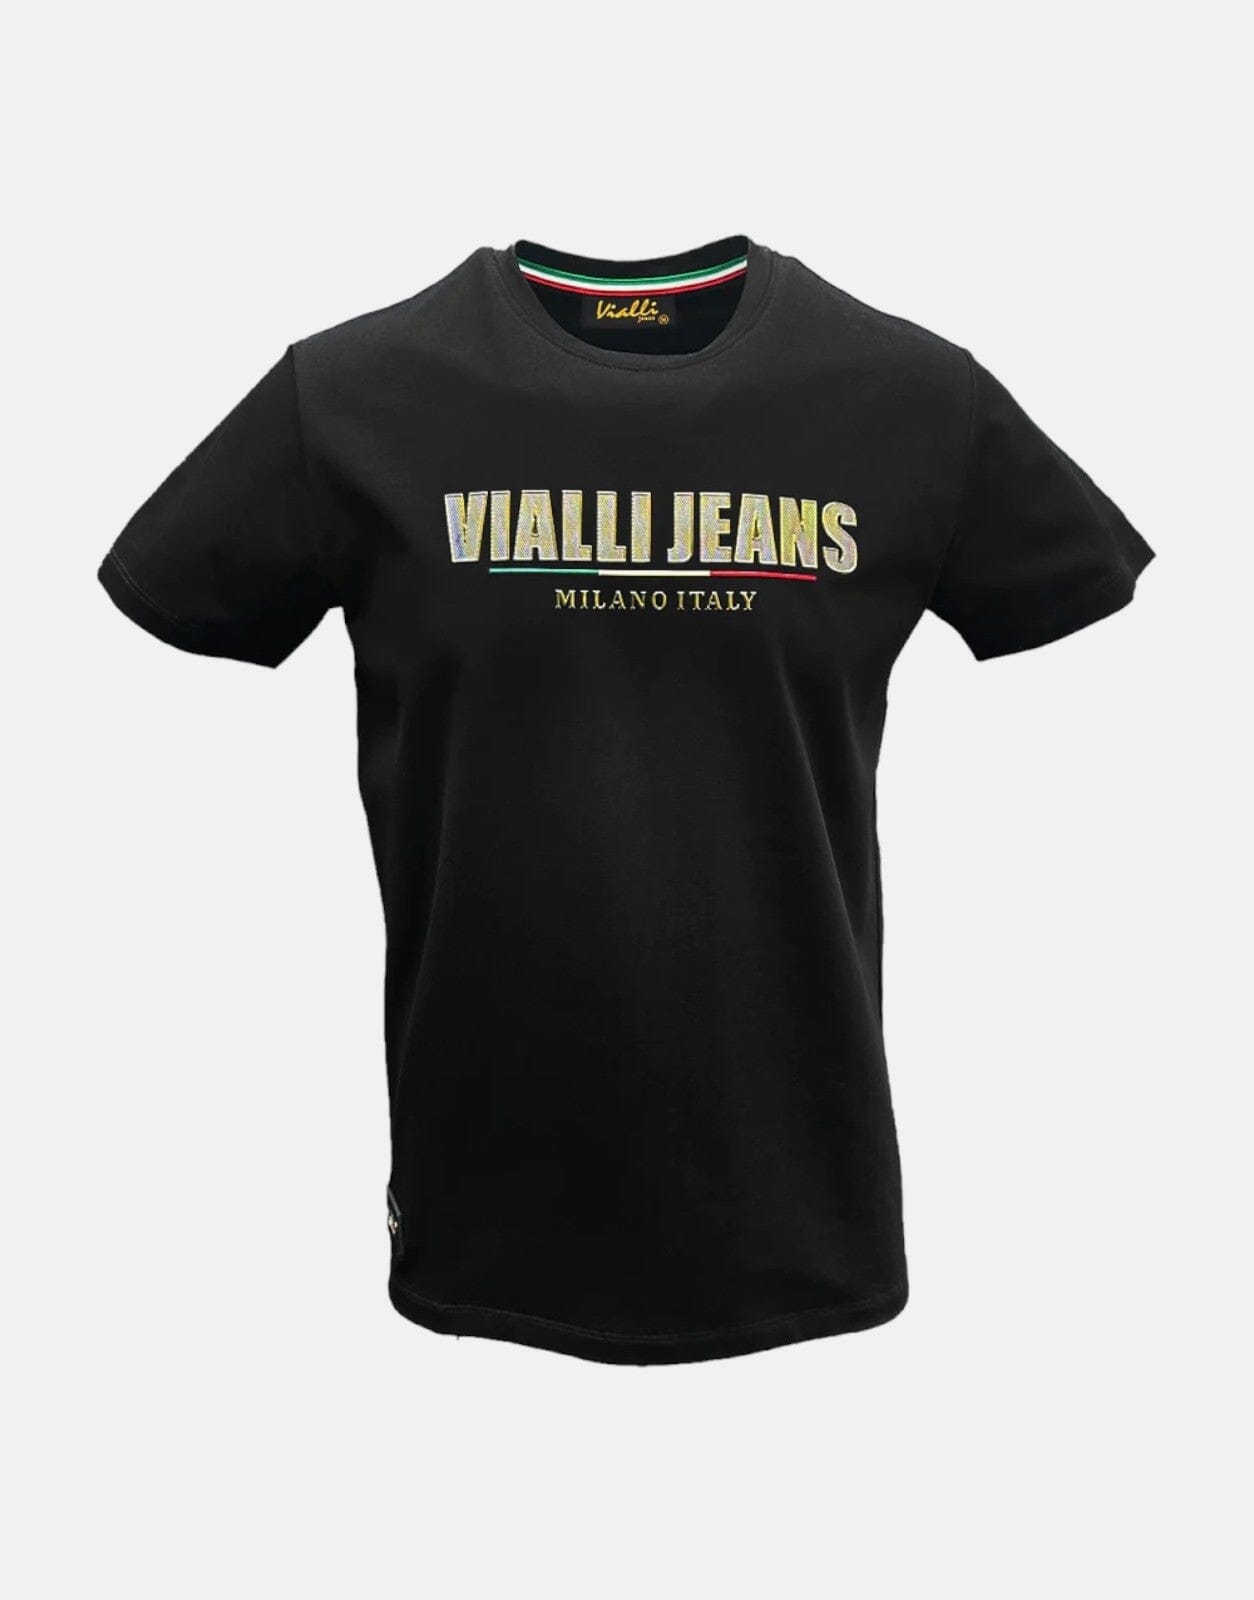 Vialli Fambani Black T-Shirt Vialli